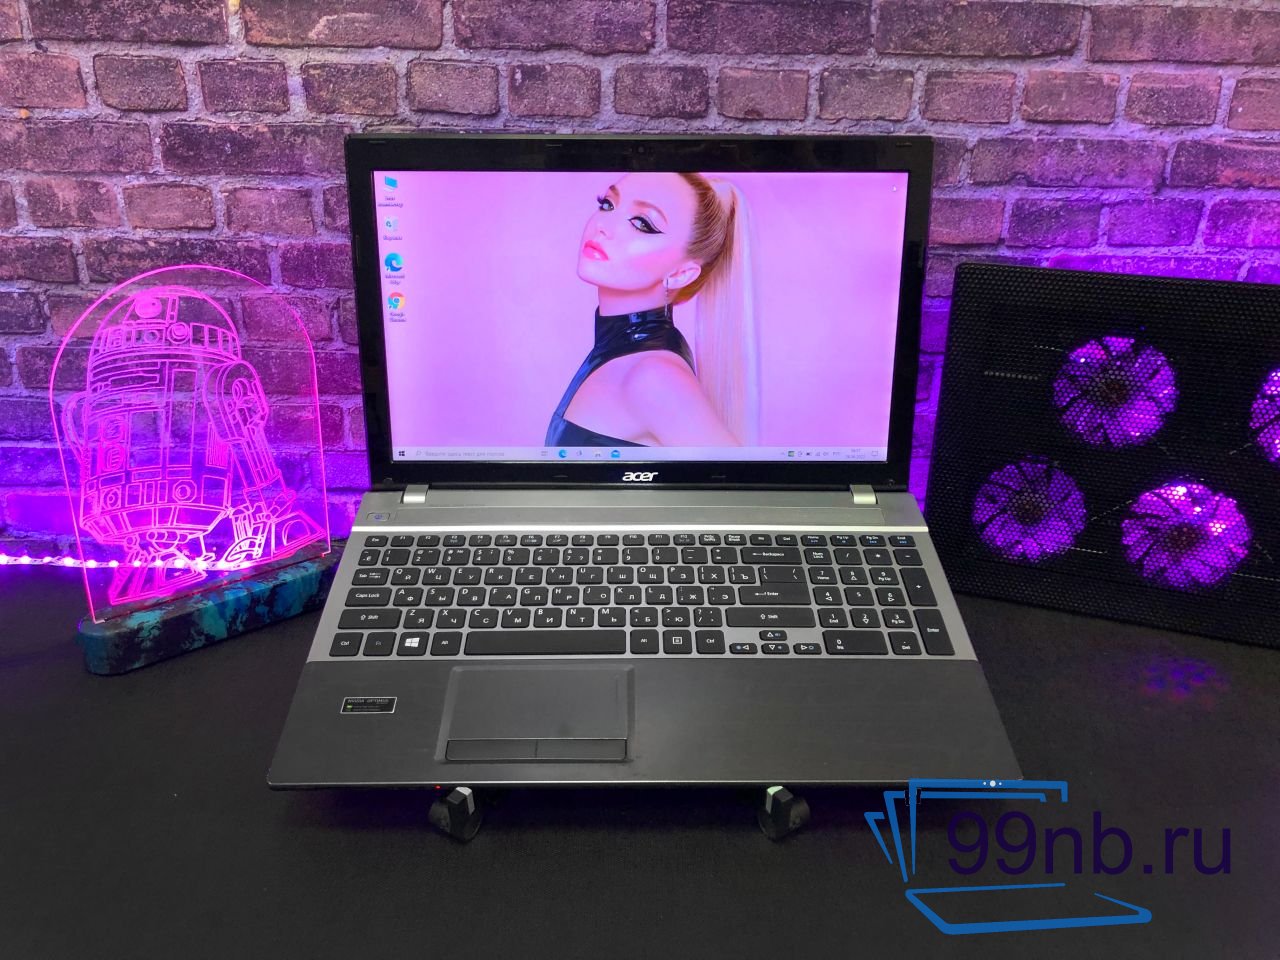  Ноутбук Acer Aspire для работы и учебы i5+1 Tb HDD